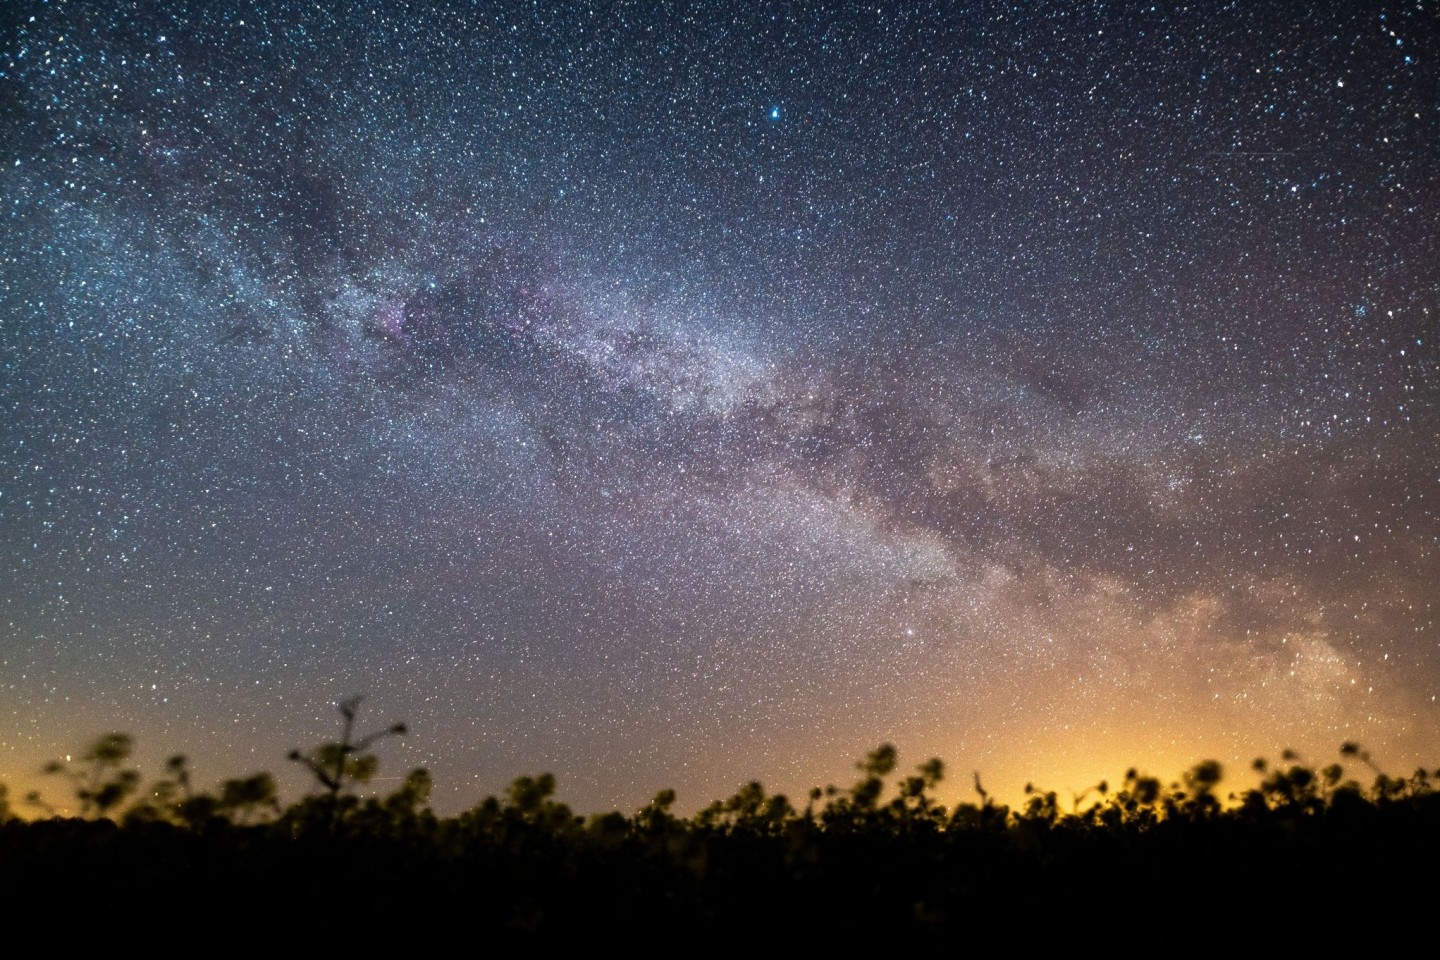 Der Sternenhimmel leuchtet über einem Rapsfeld. Laut Nasa könnte sich in den kommenden Monaten ein Himmelsspektakel ereignen - eine sogenannte Nova-Explosion.